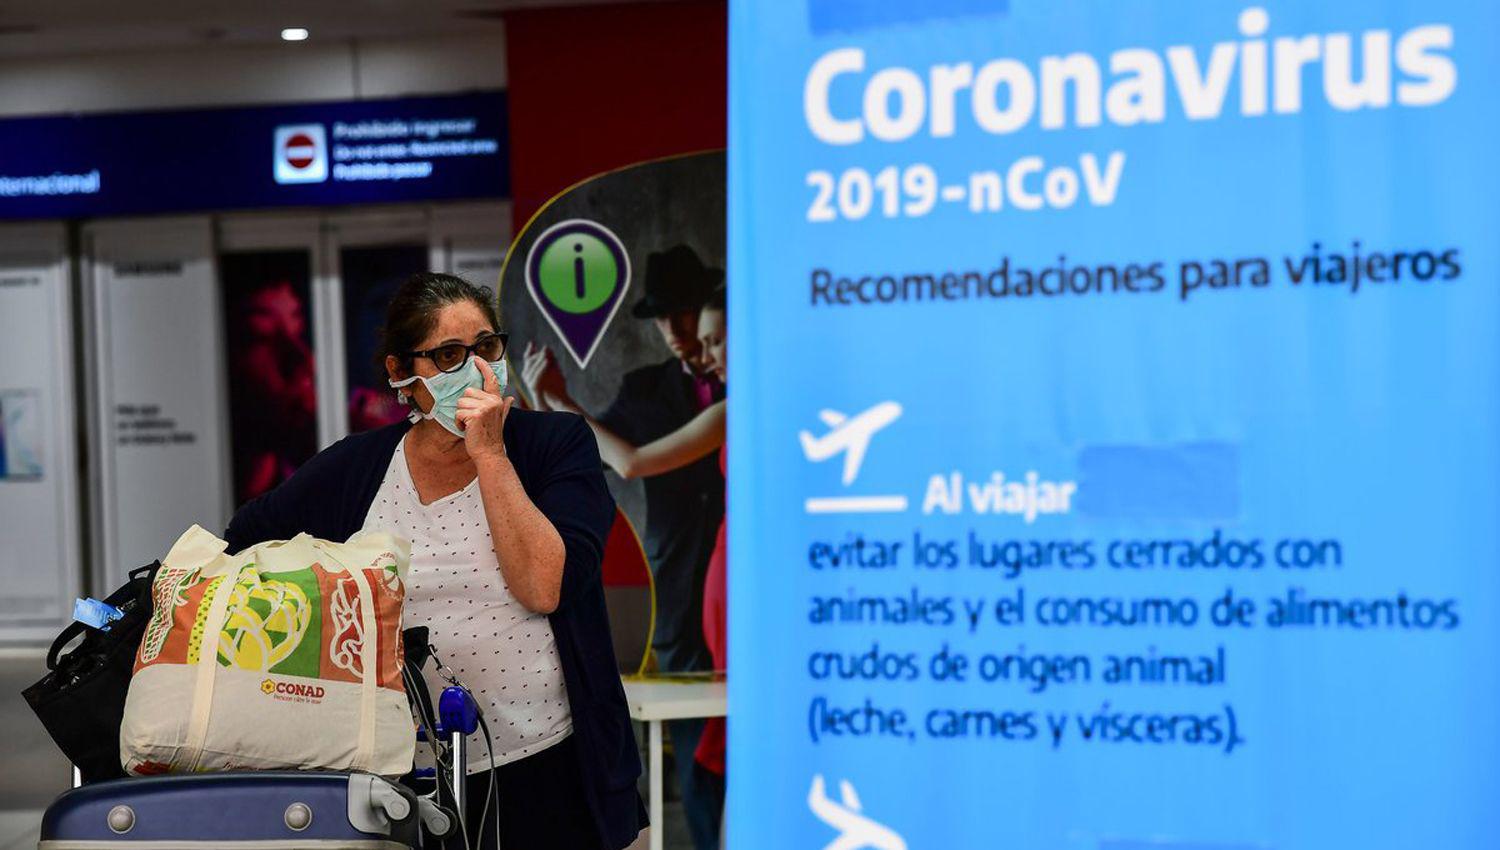 Coronavirus en la Argentina- confirman 11 nuevos casos y ya son 45 los infectados en el paiacutes